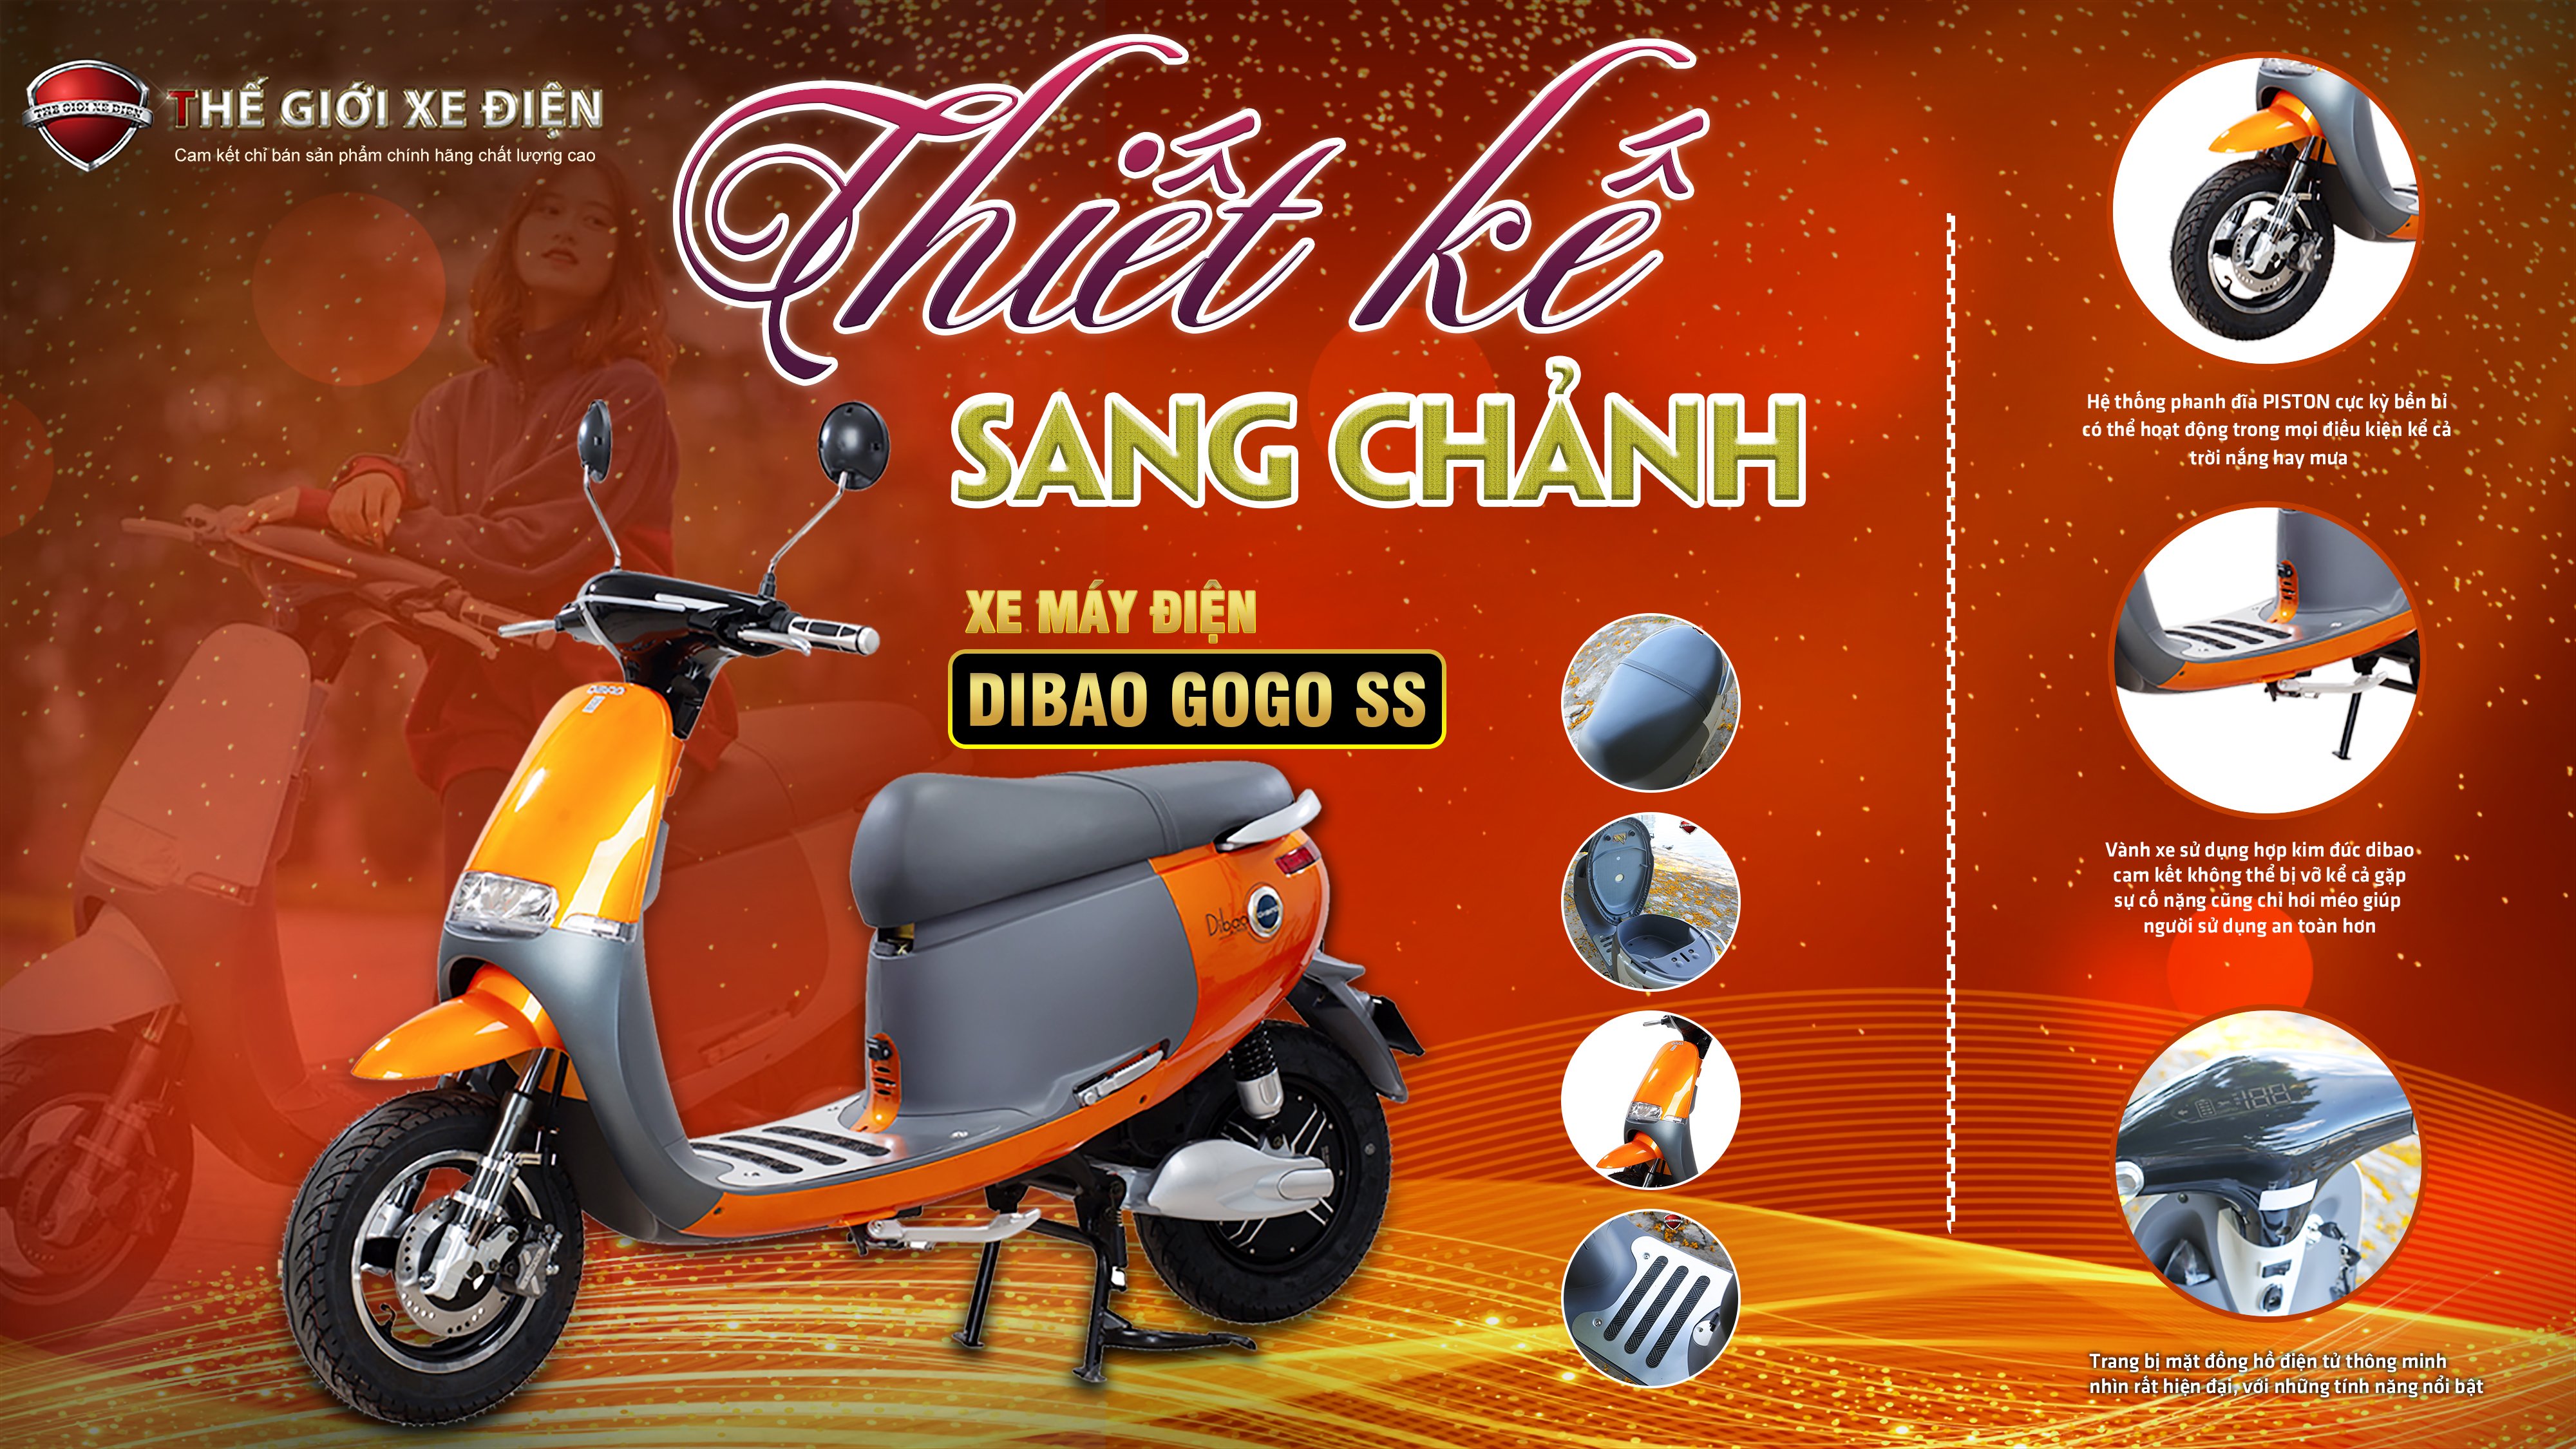 Xe máy điện Dibao Gogo SS càng đúc phanh đĩa